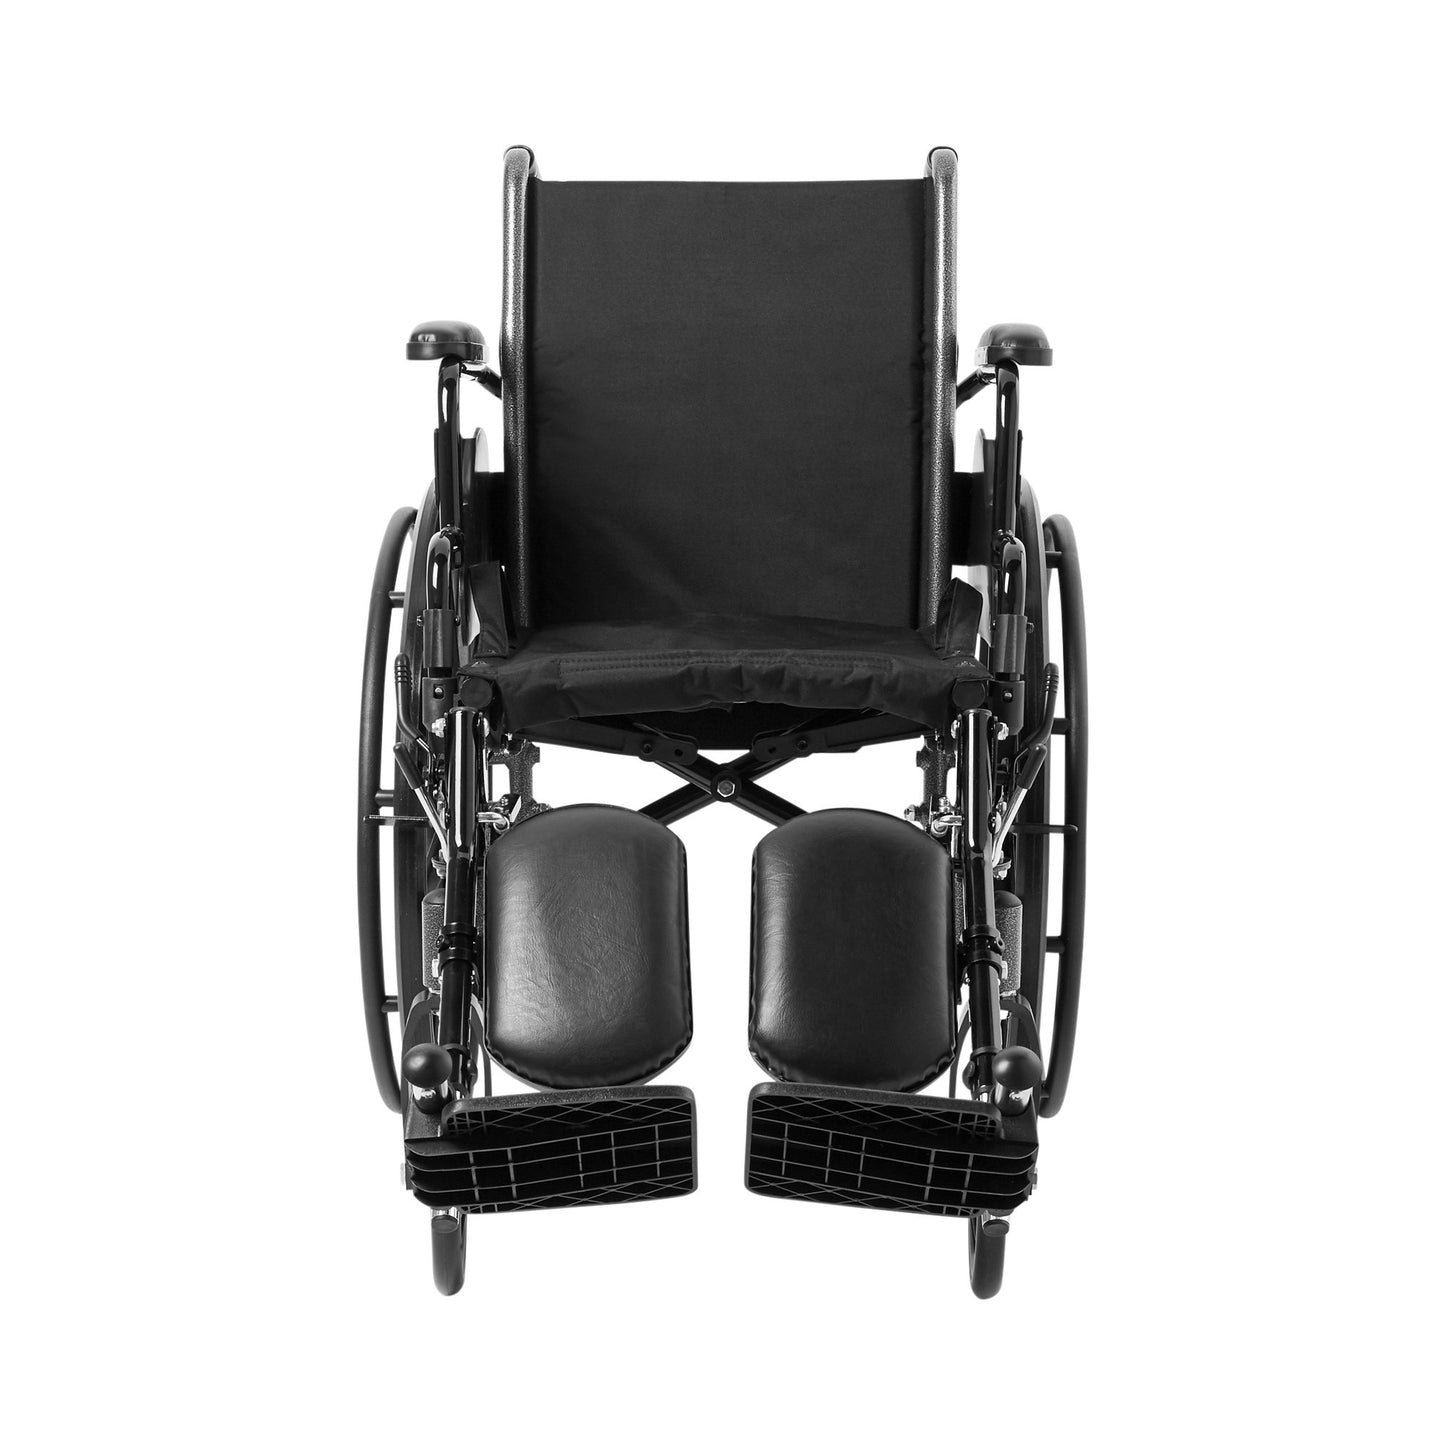 McKesson Lightweight Wheelchair, 16 Inch Seat Width, Legrest